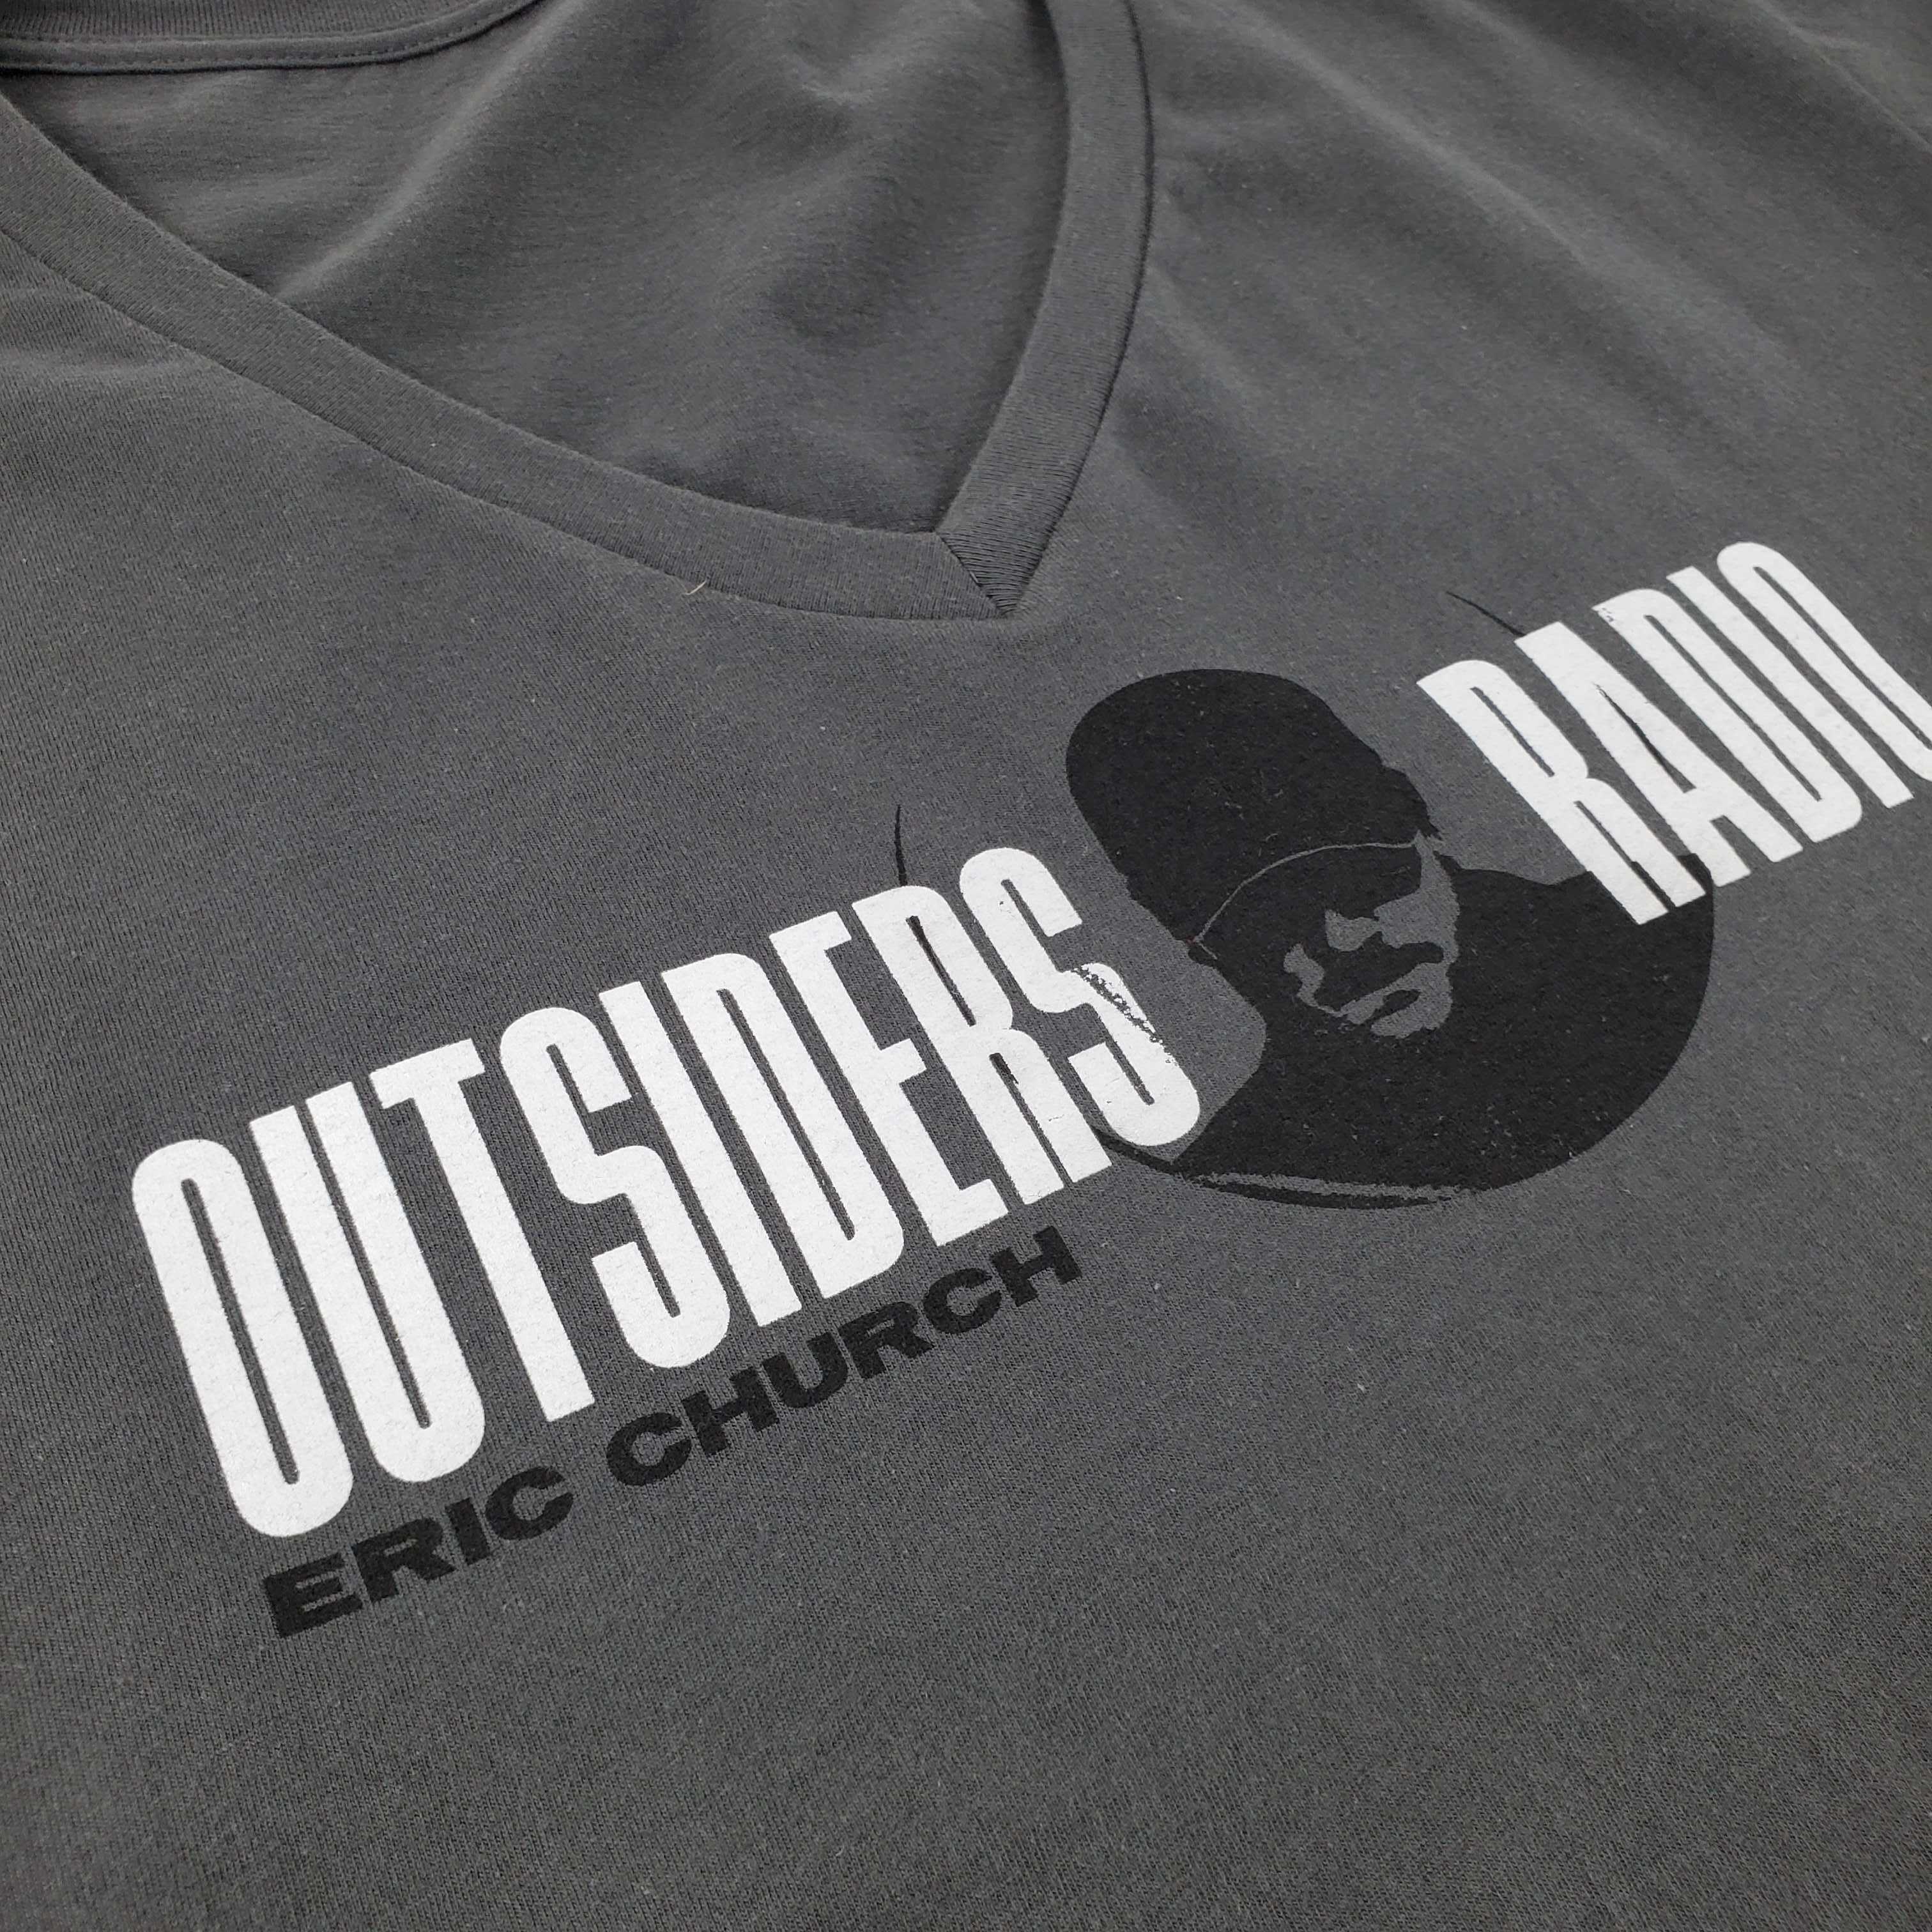 Outsiders Radio Ladies T-Shirt